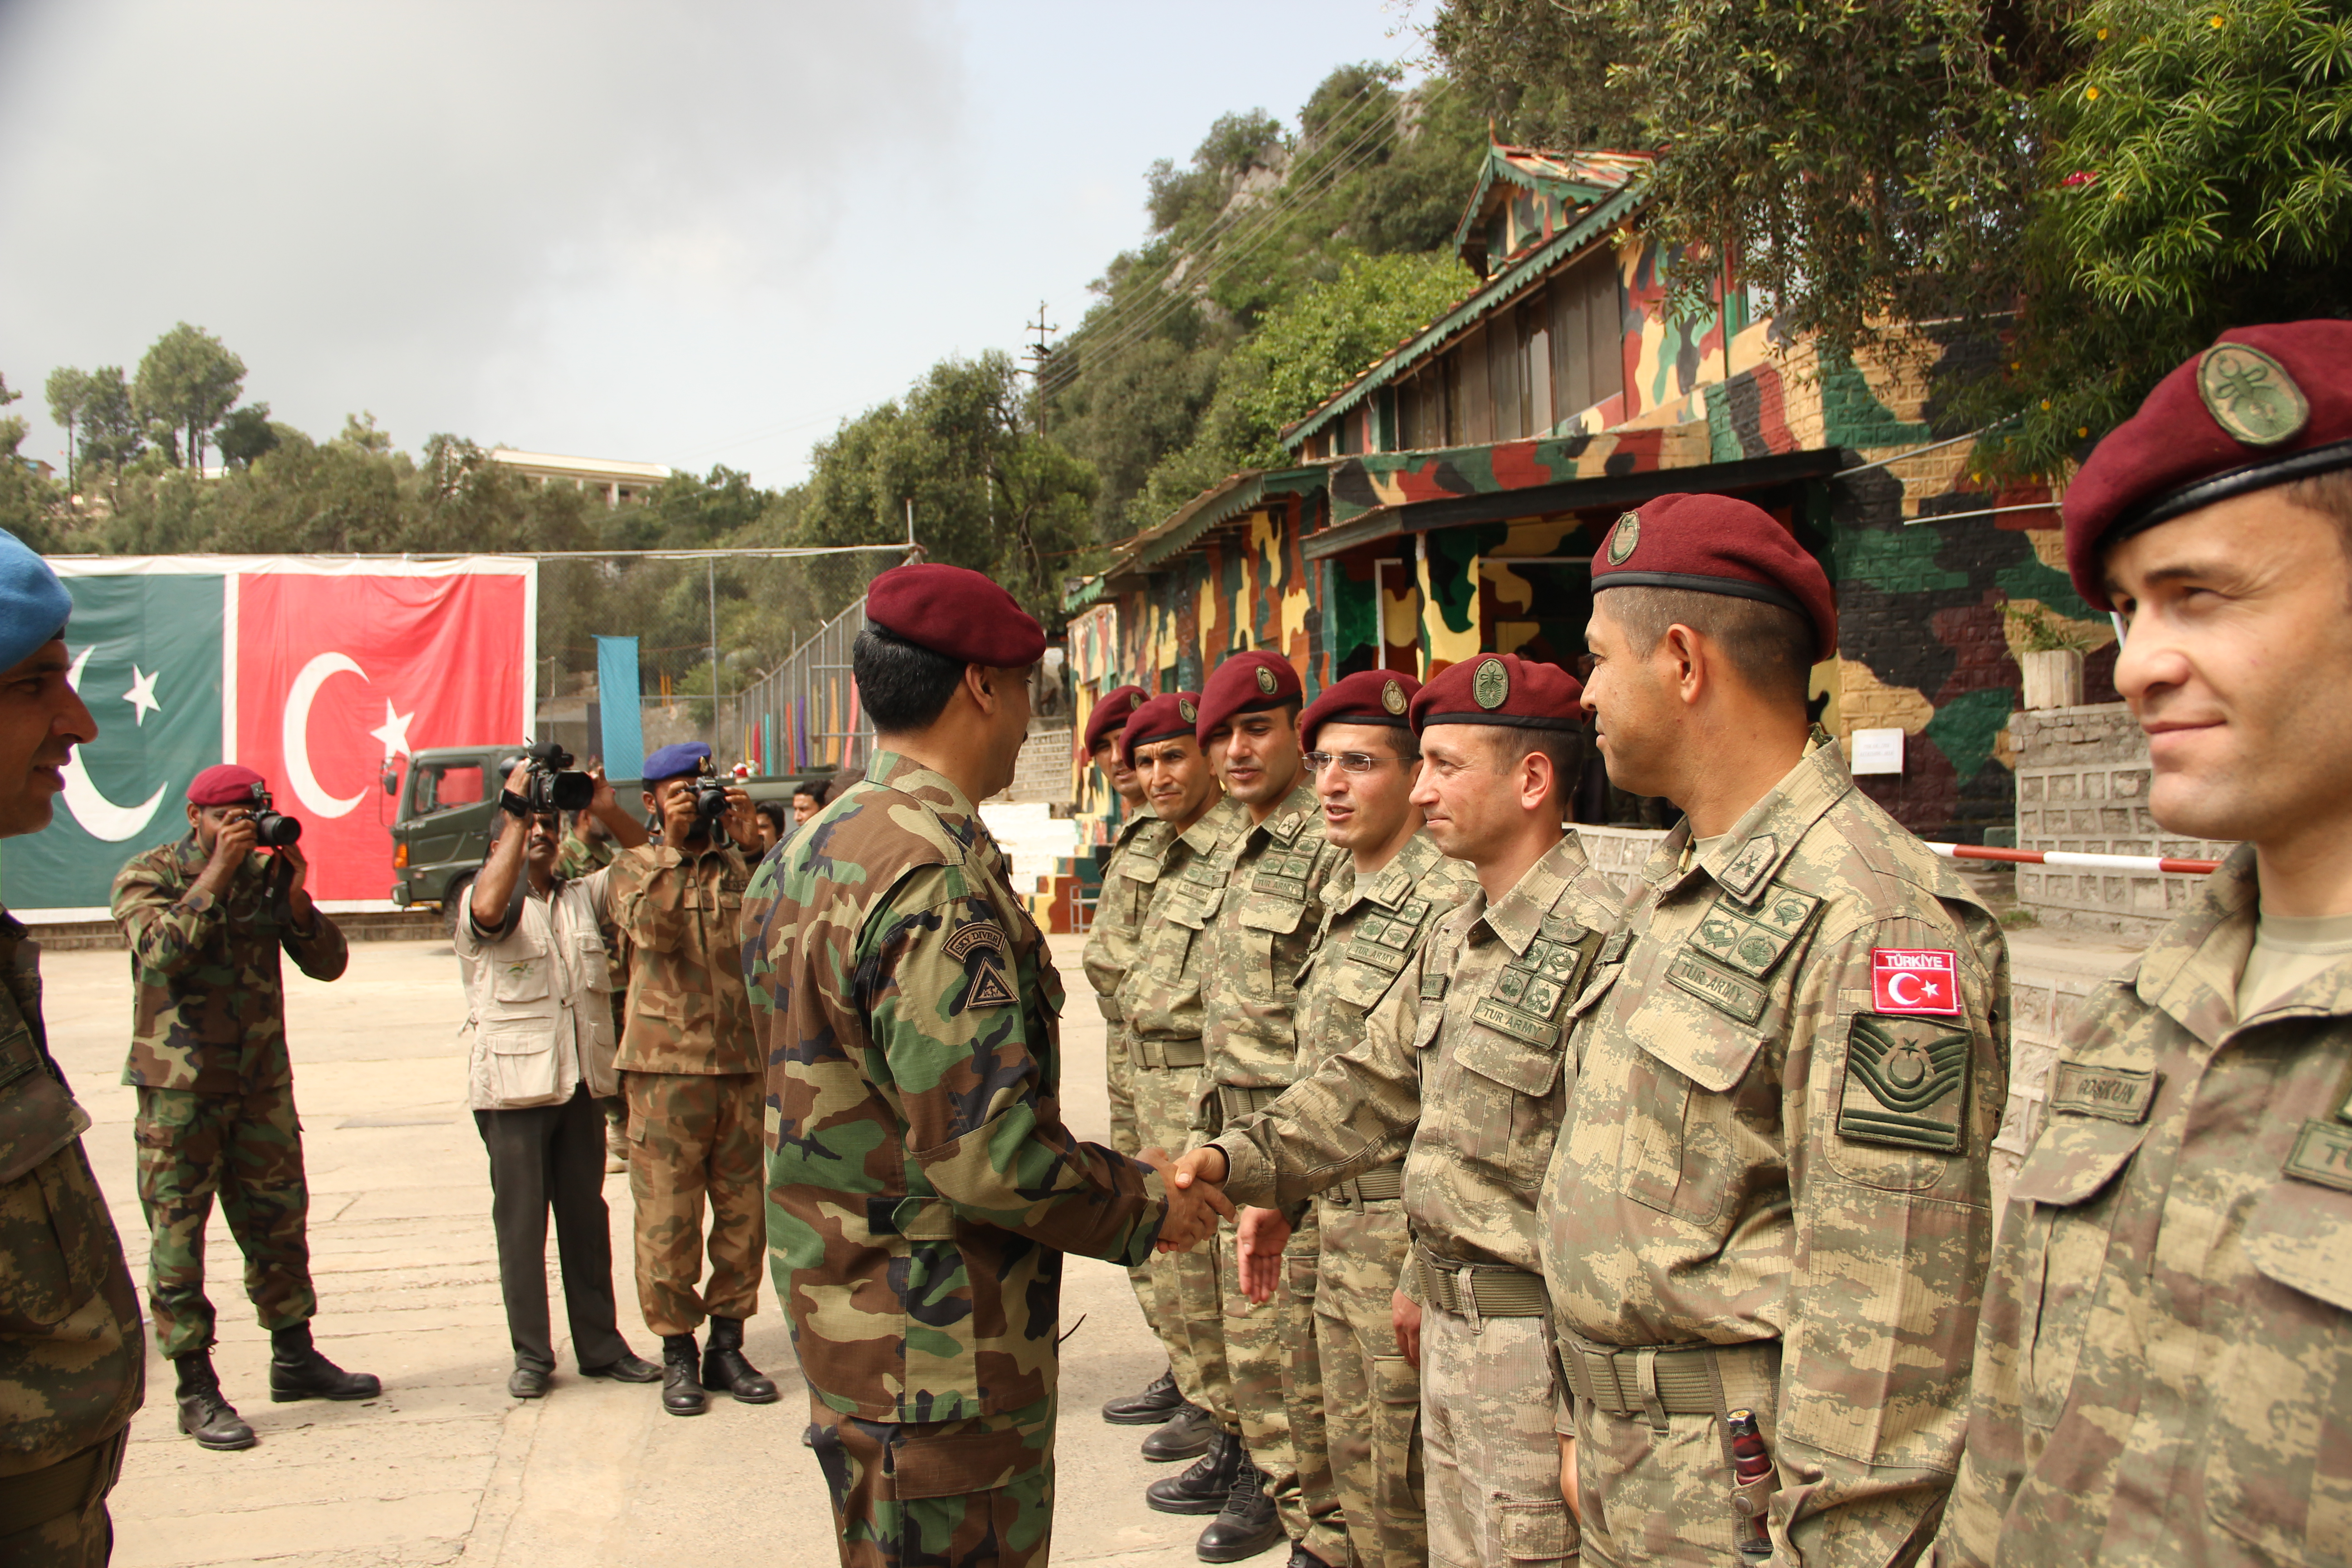 قام قائد القوات الخاصة الباكستانية في نهاية التدريبات بإعطاء خالص دمير شهادة تقدير بنفسه بفضل ما حققه من نجاح.